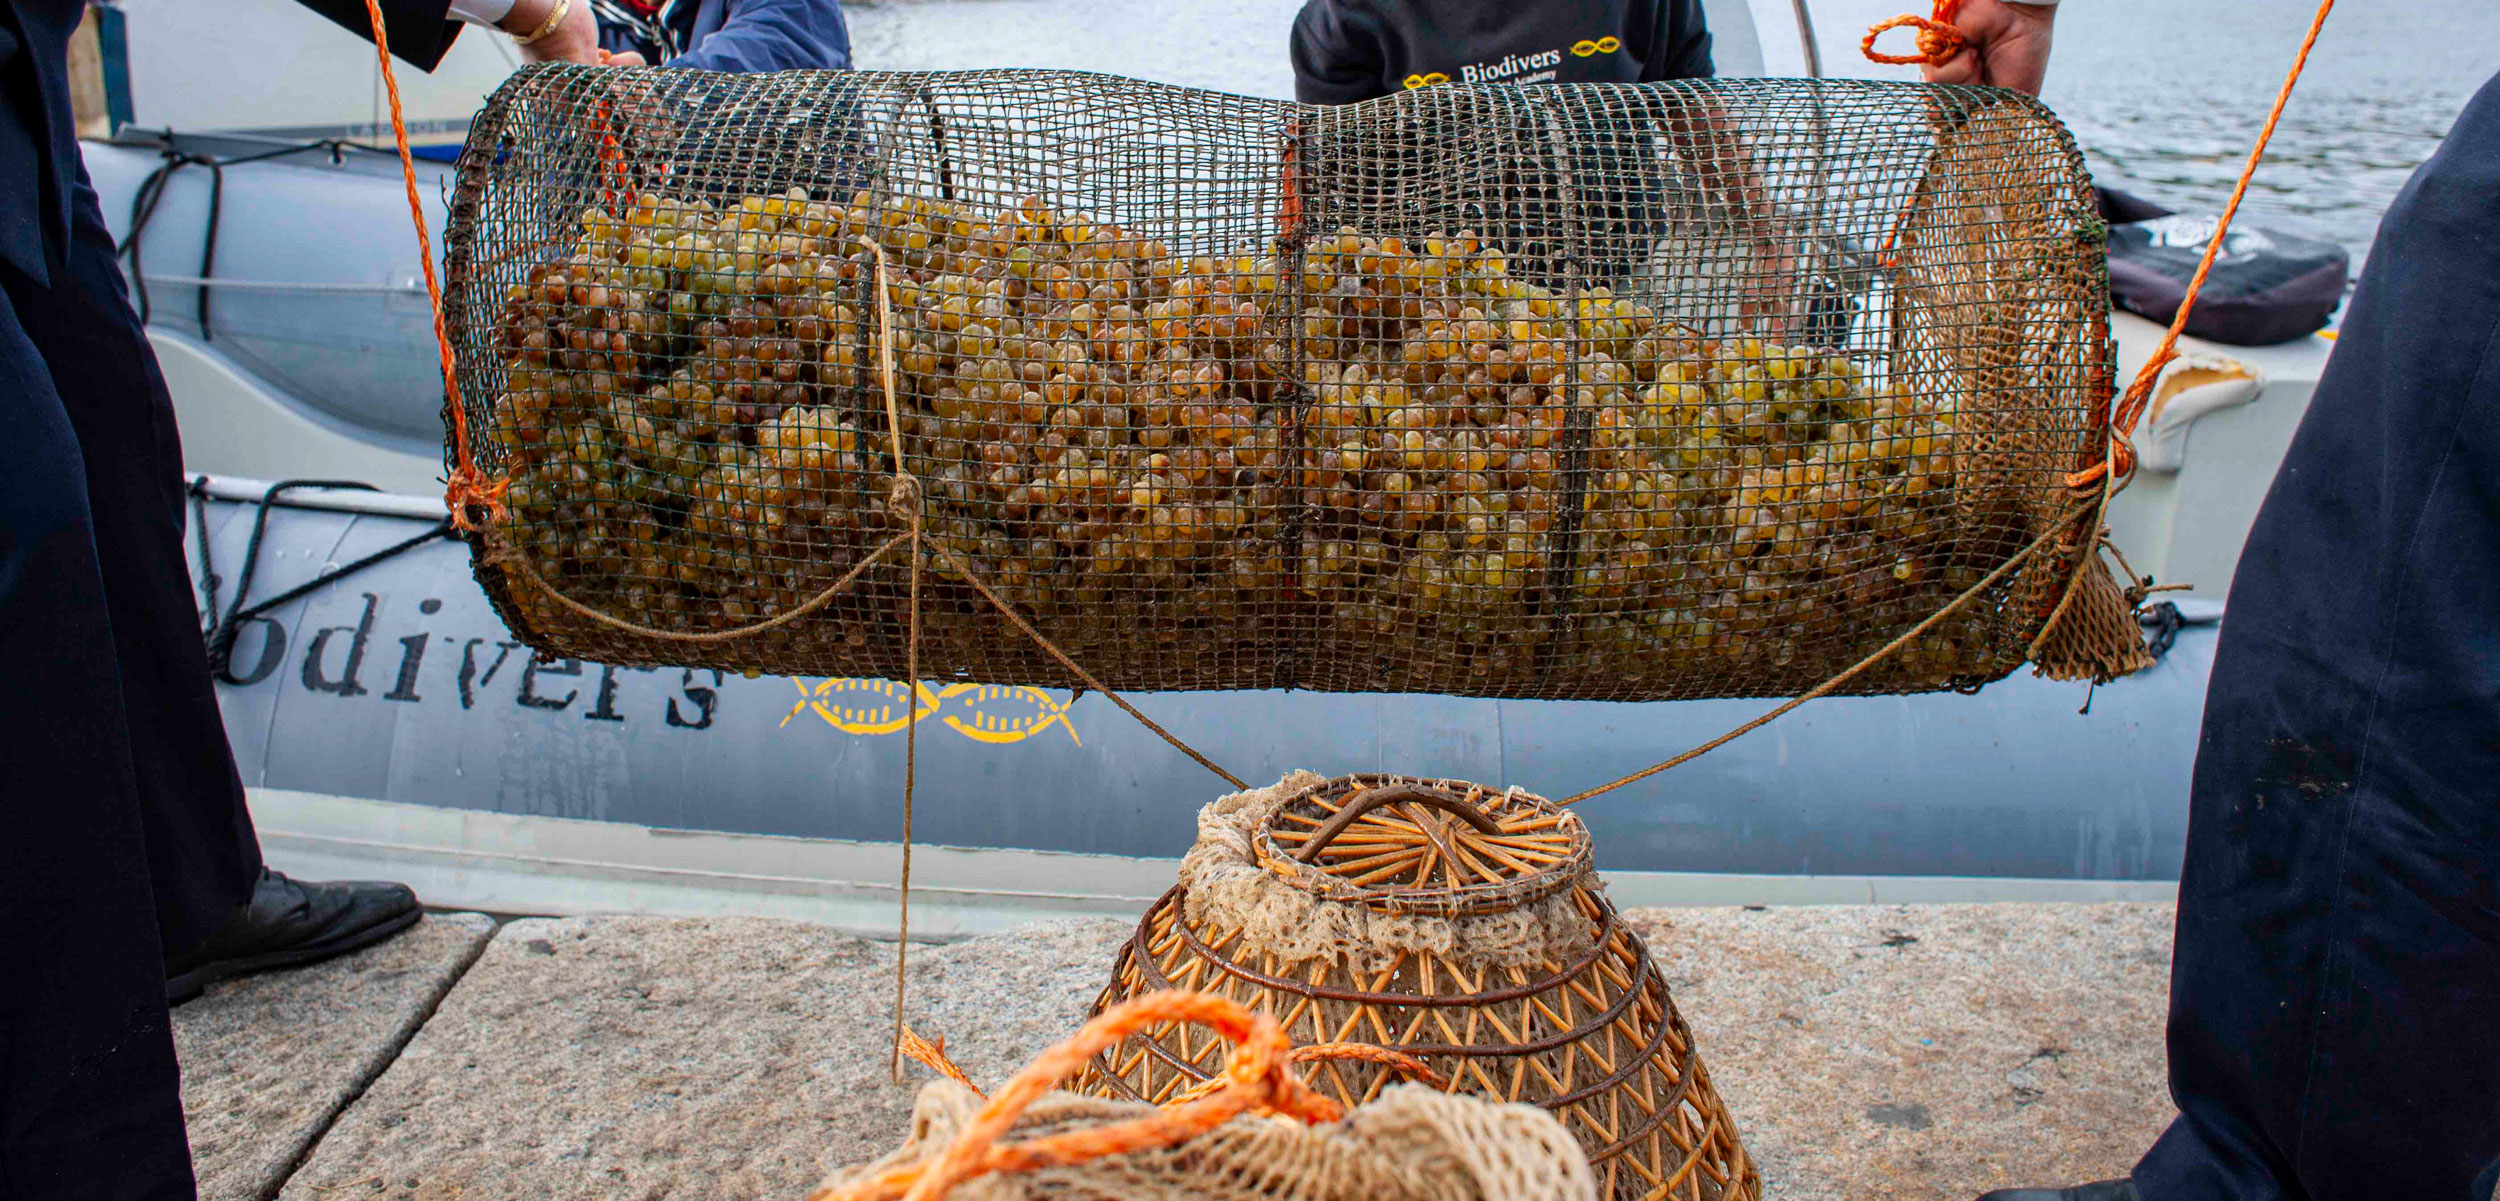 basket of grapes at dock